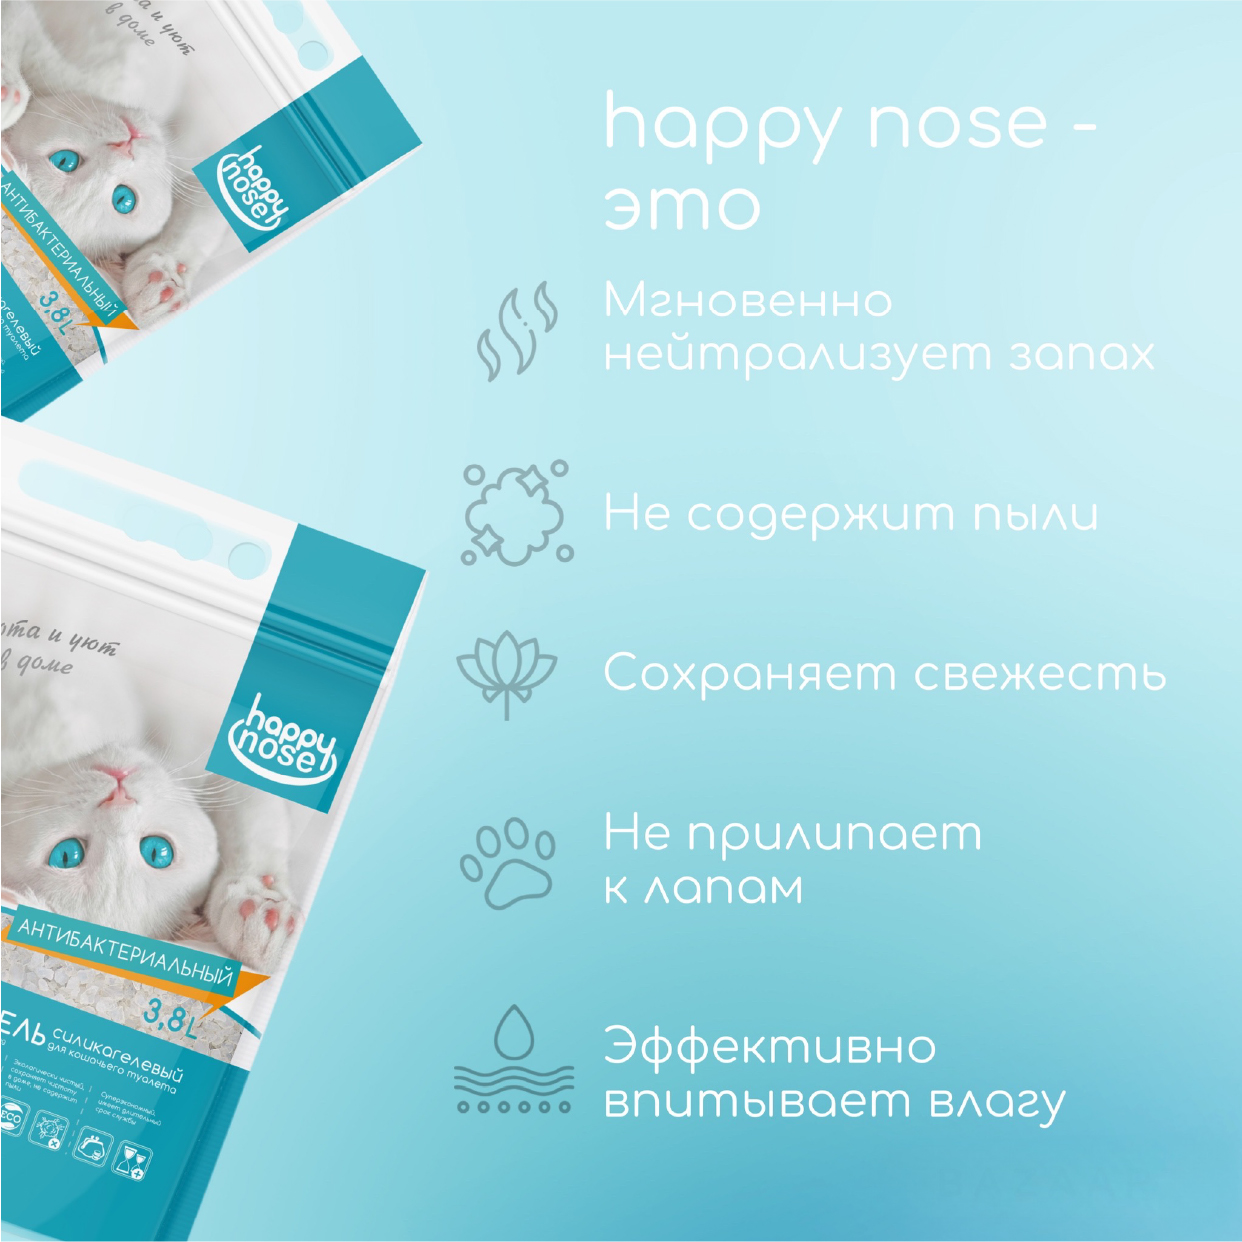 Наполнитель силикагелевый Happy Nose для кошачьего туалета, антибактериальный впитывающий 3,8 л